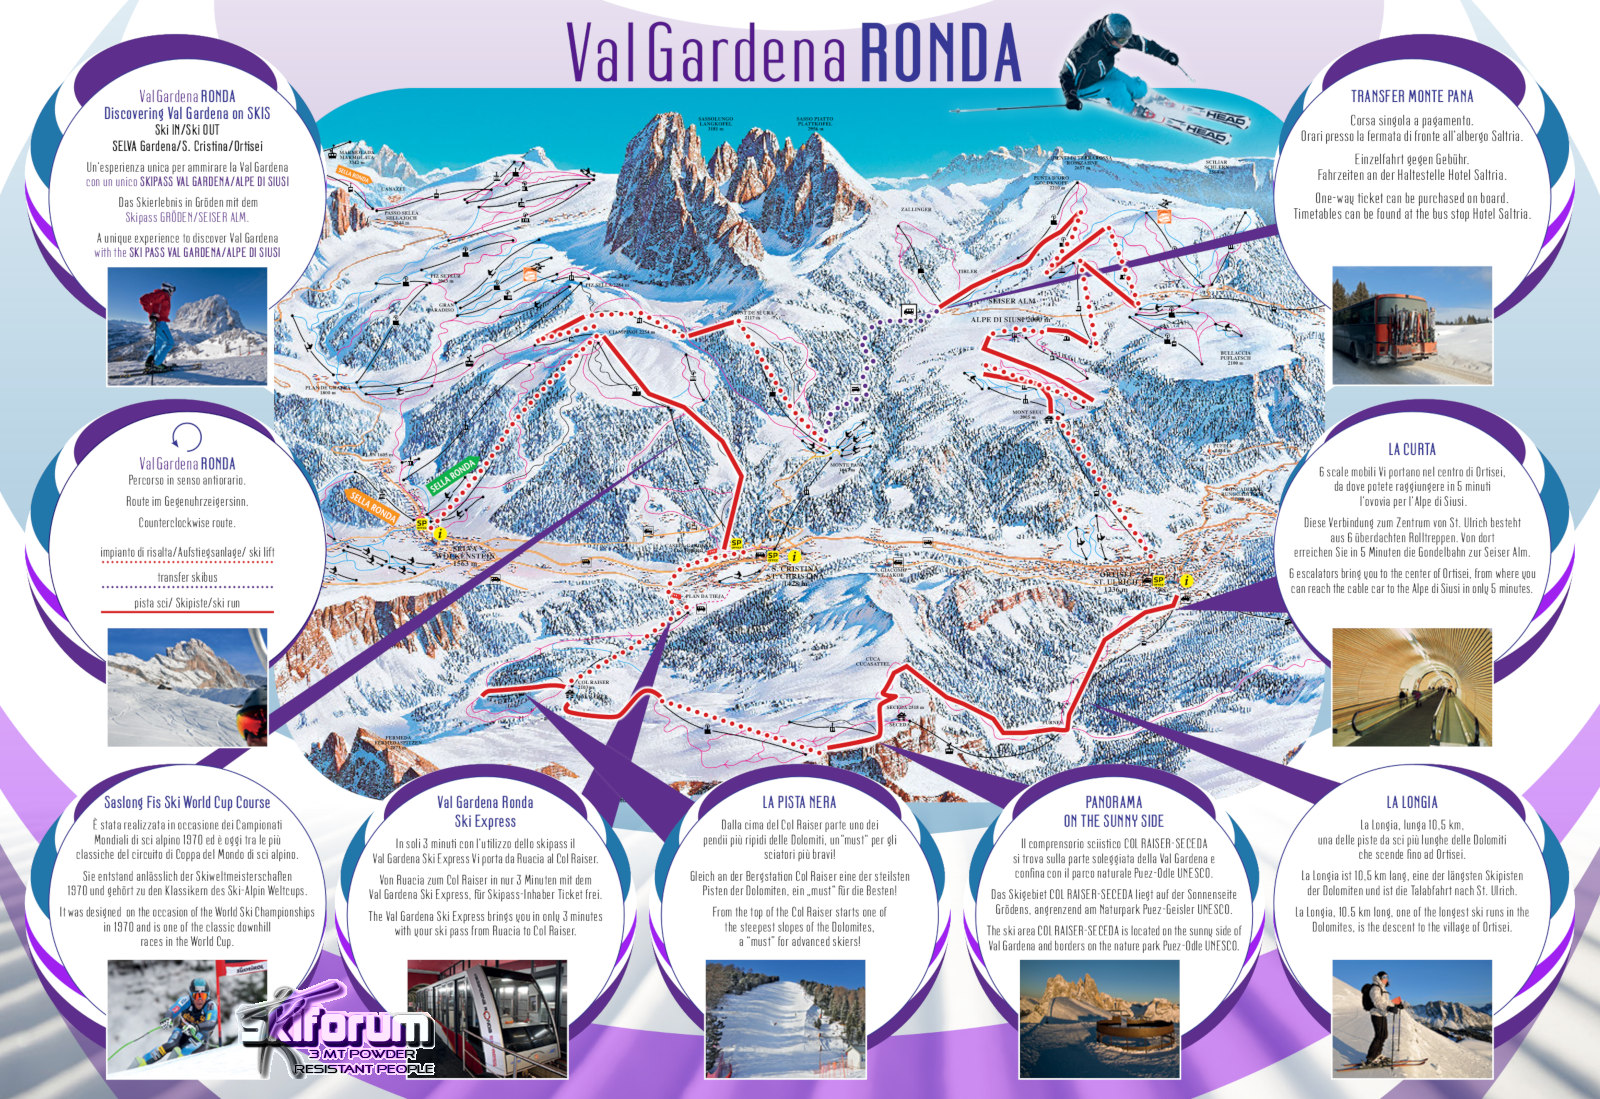 Guida allo skitour Val Gardena Ronda nel cuore del Dolomiti Superski